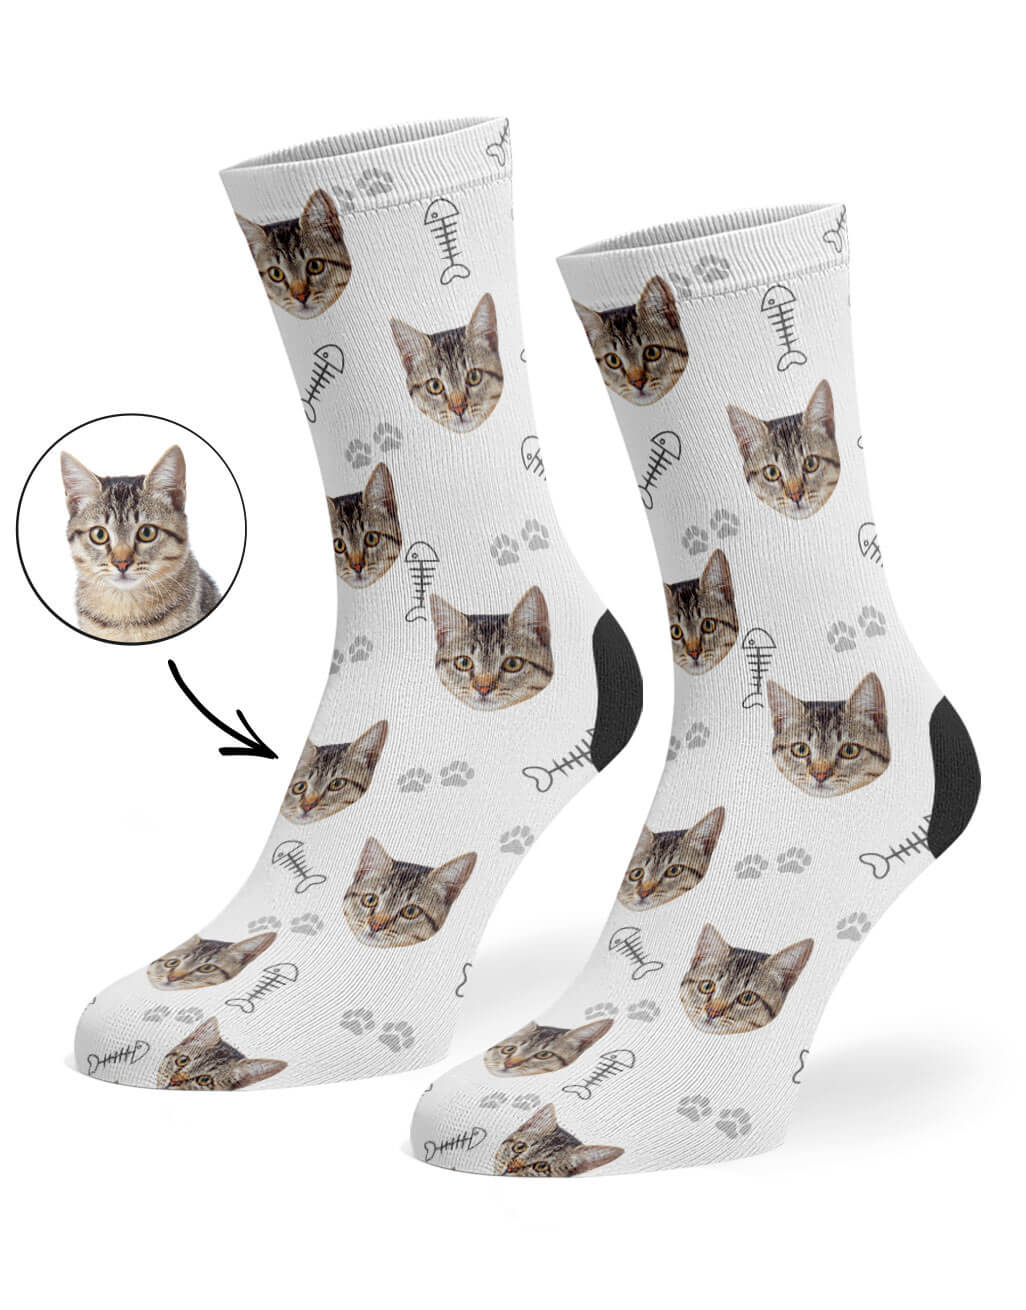 White Your Cat On Socks